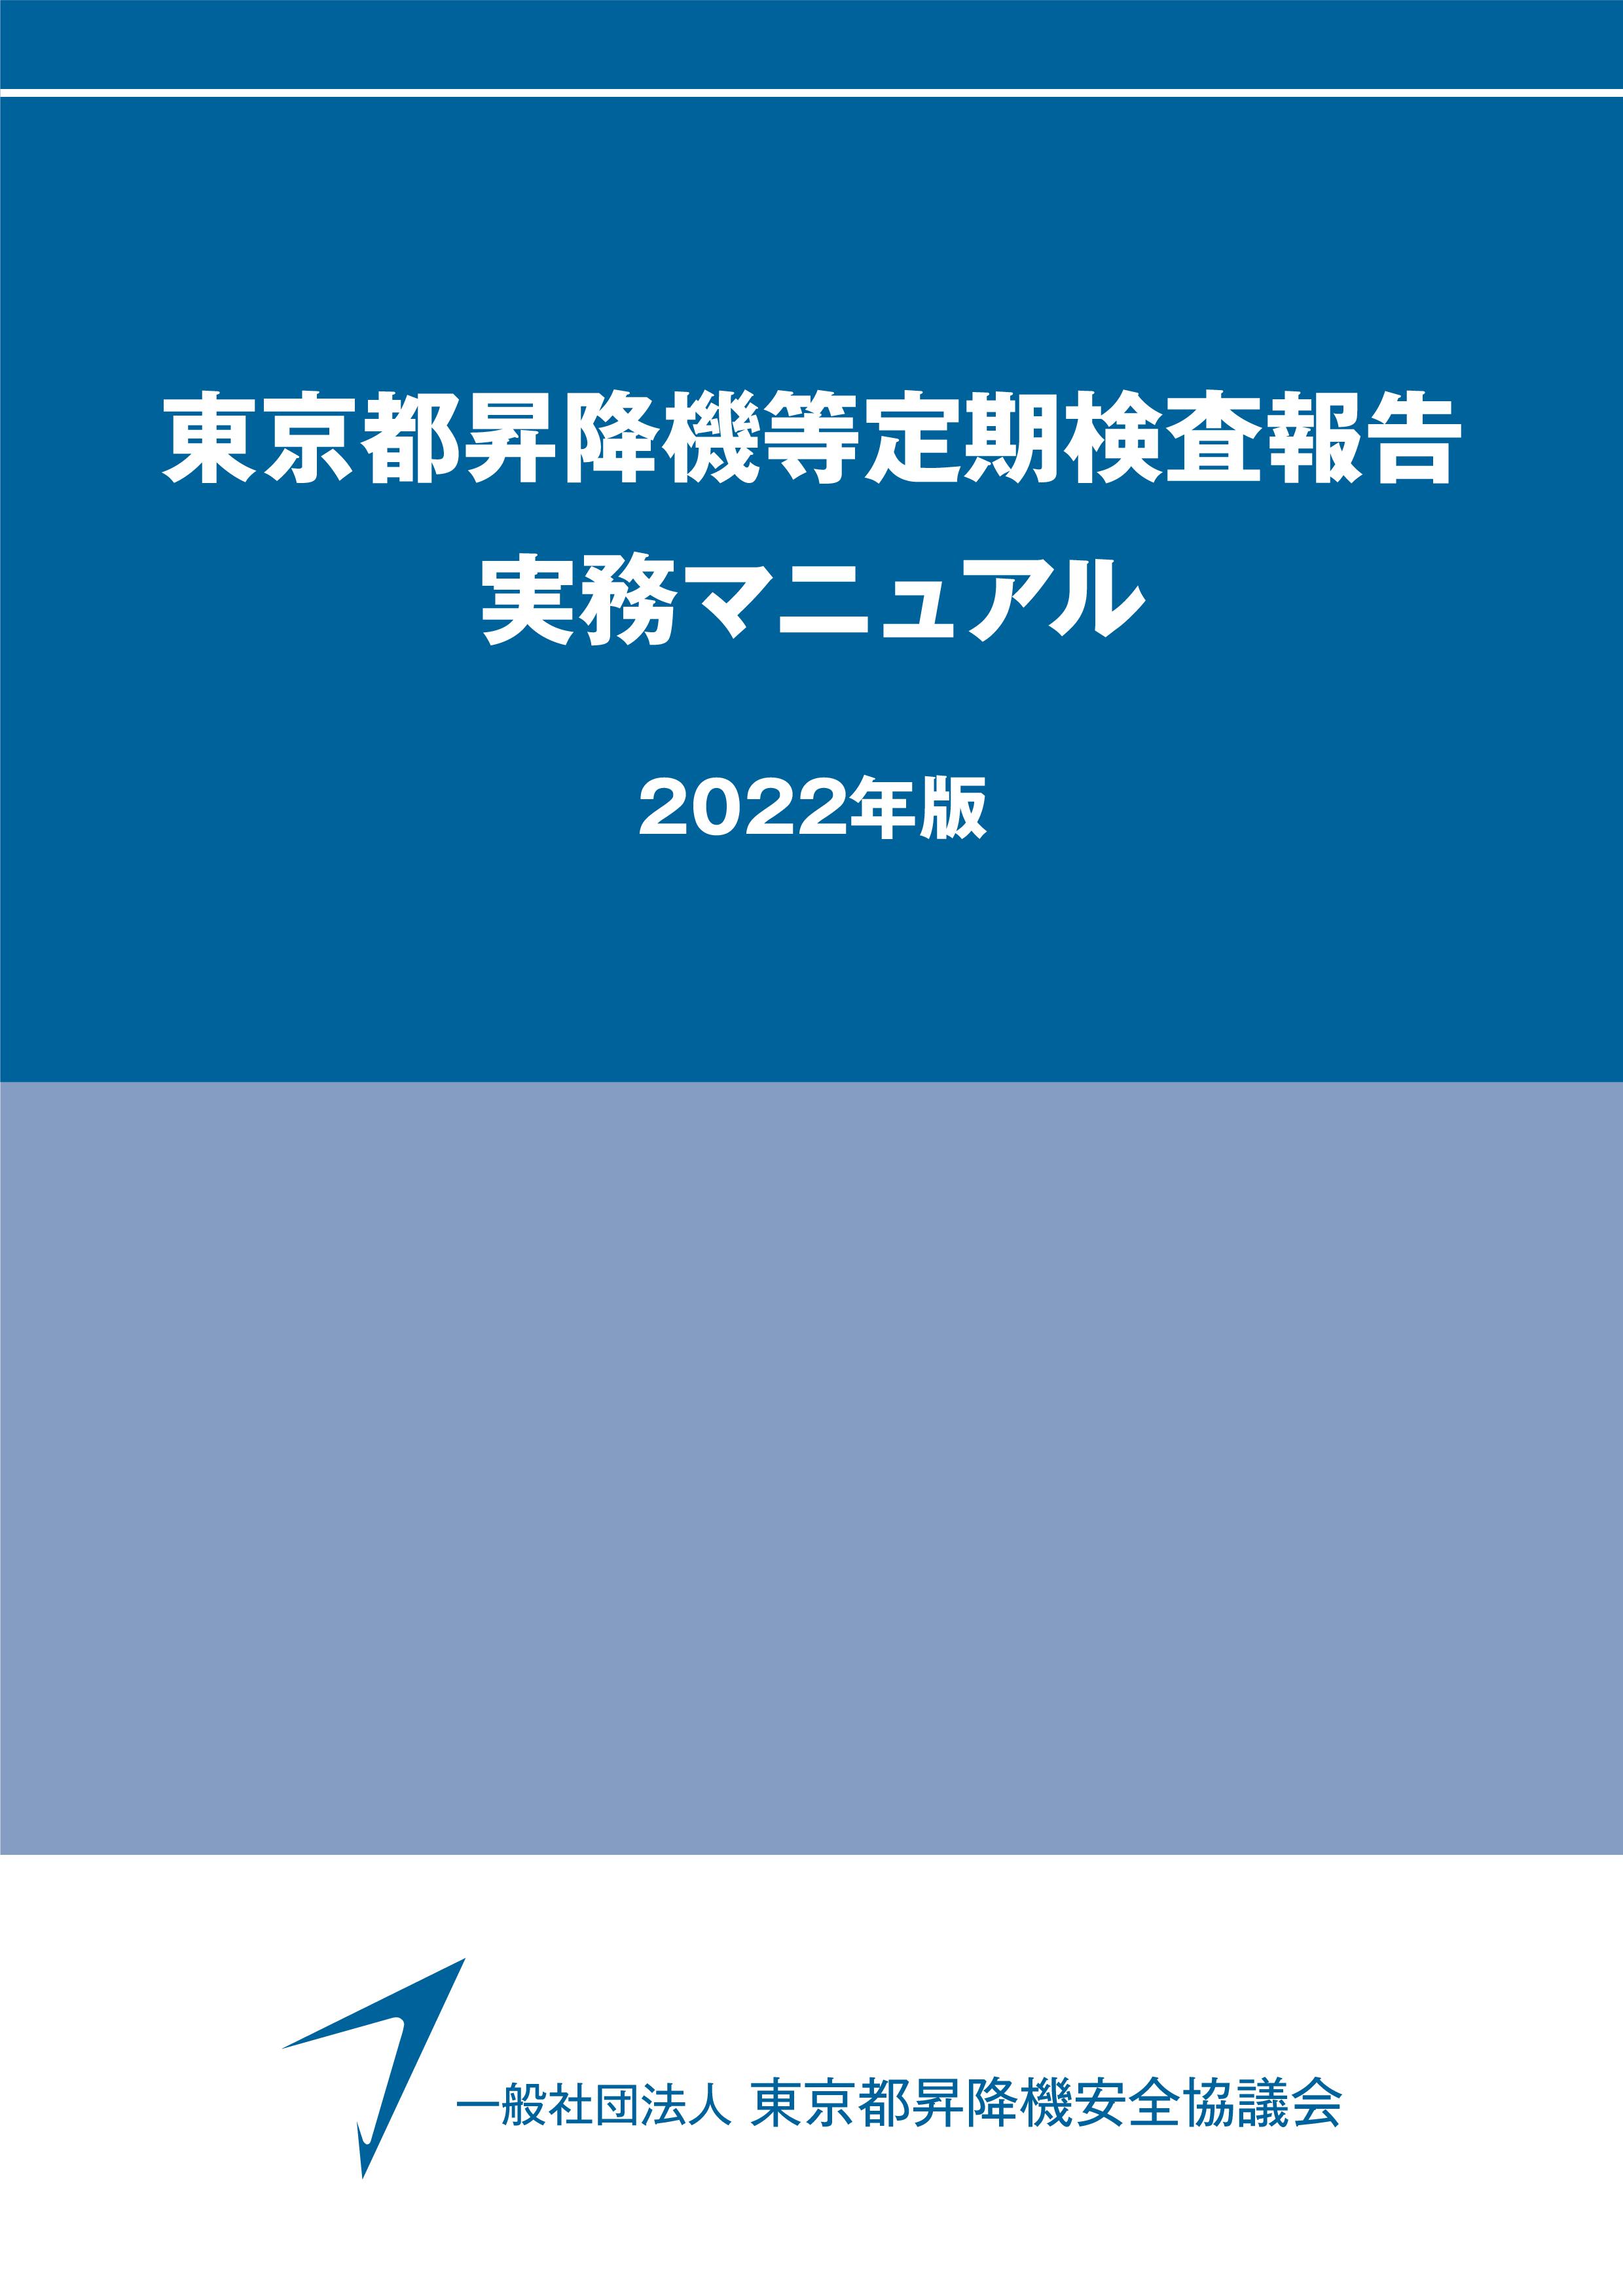 昇降機定期検査報告書 作成要領（2022年版）